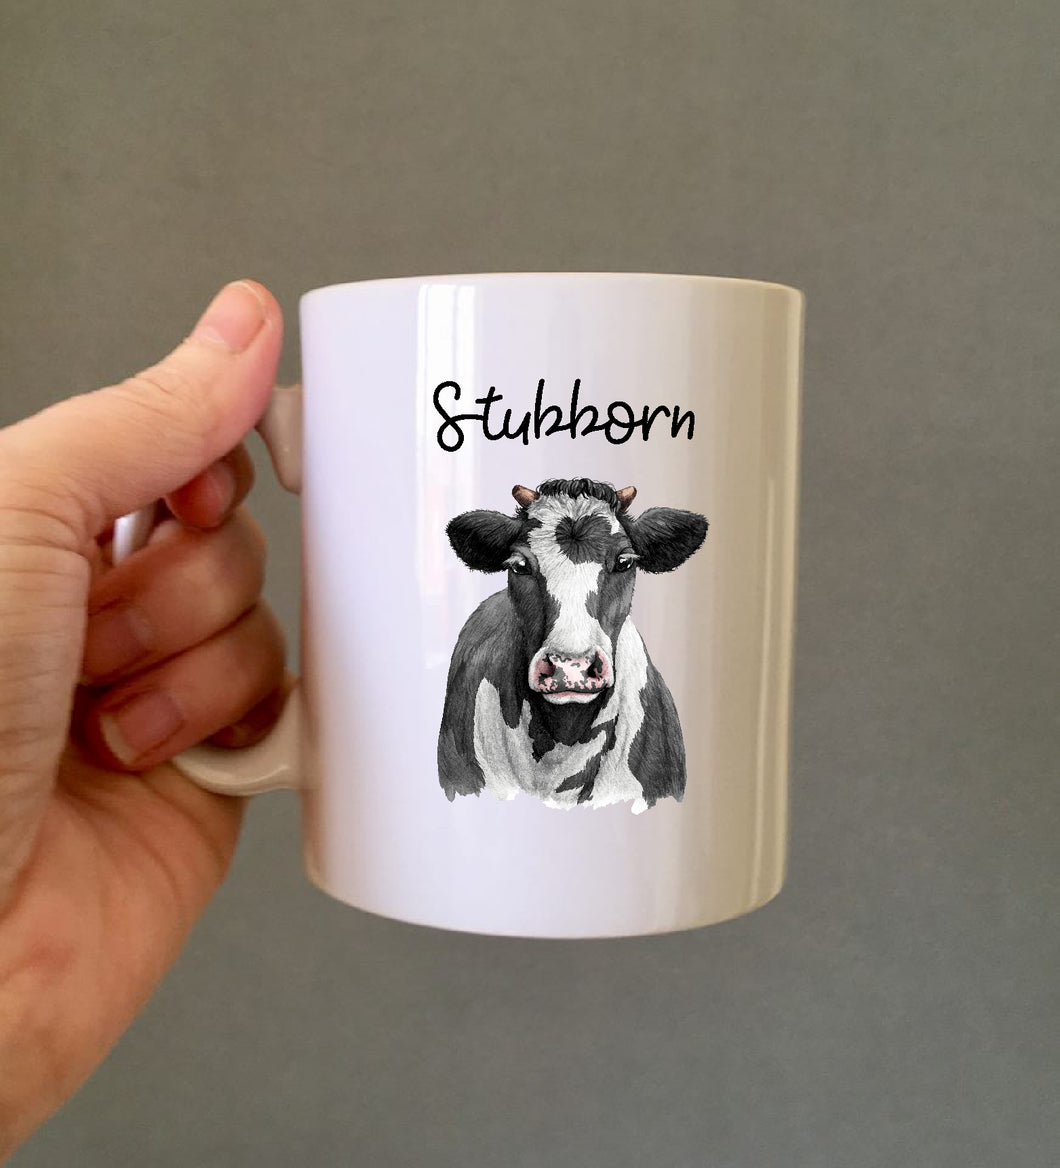 Stubborn Cow Ceramic Printed Mug